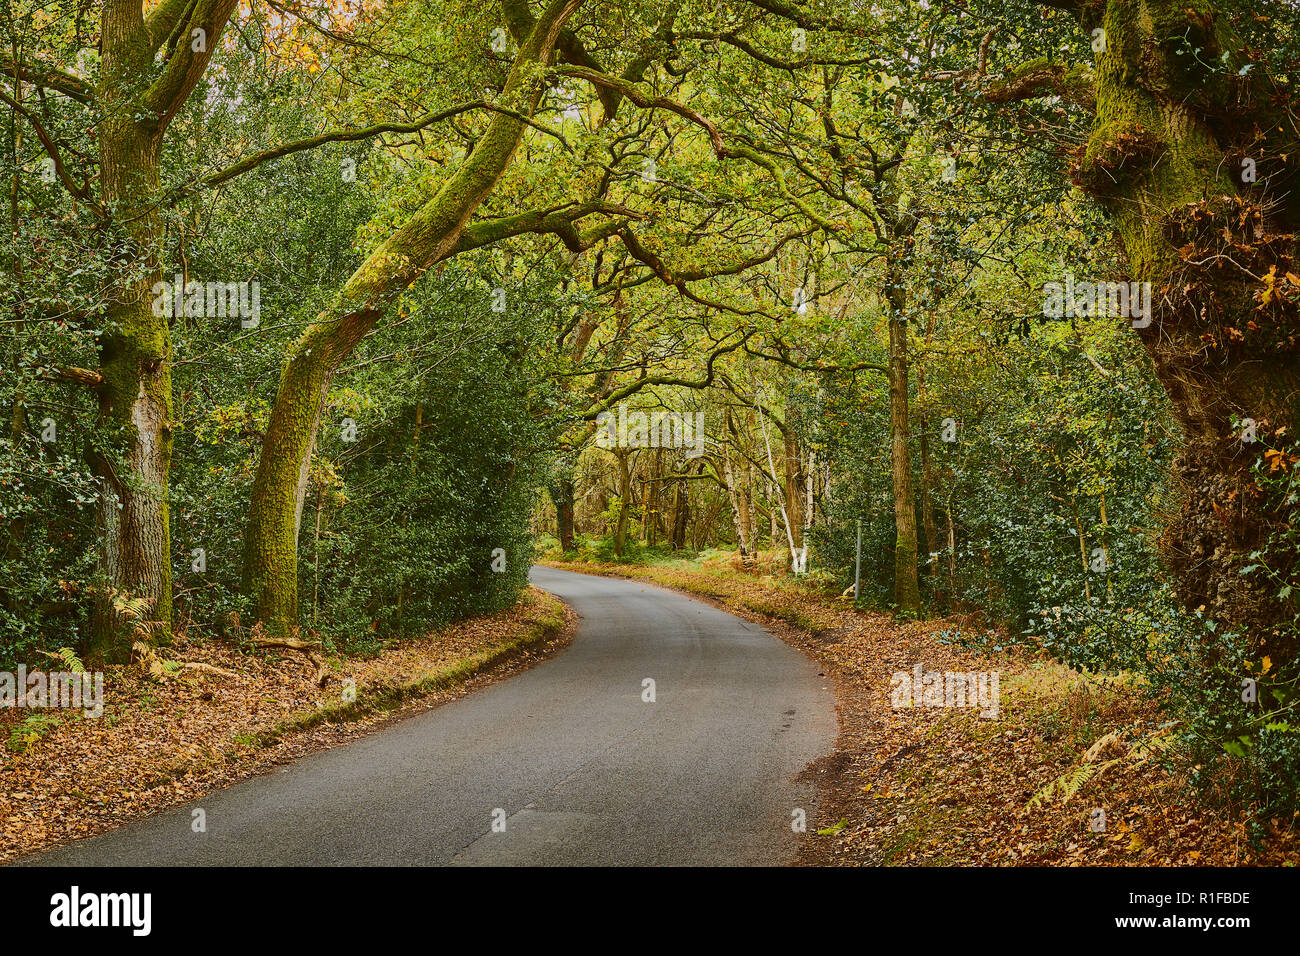 Eine ruhige Grafschaft Straße ohne Verkehr durch einen Wald auf einen Herbsttag mit Bäume und Laub auf jeder Seite der Straße, England, Großbritannien Stockfoto